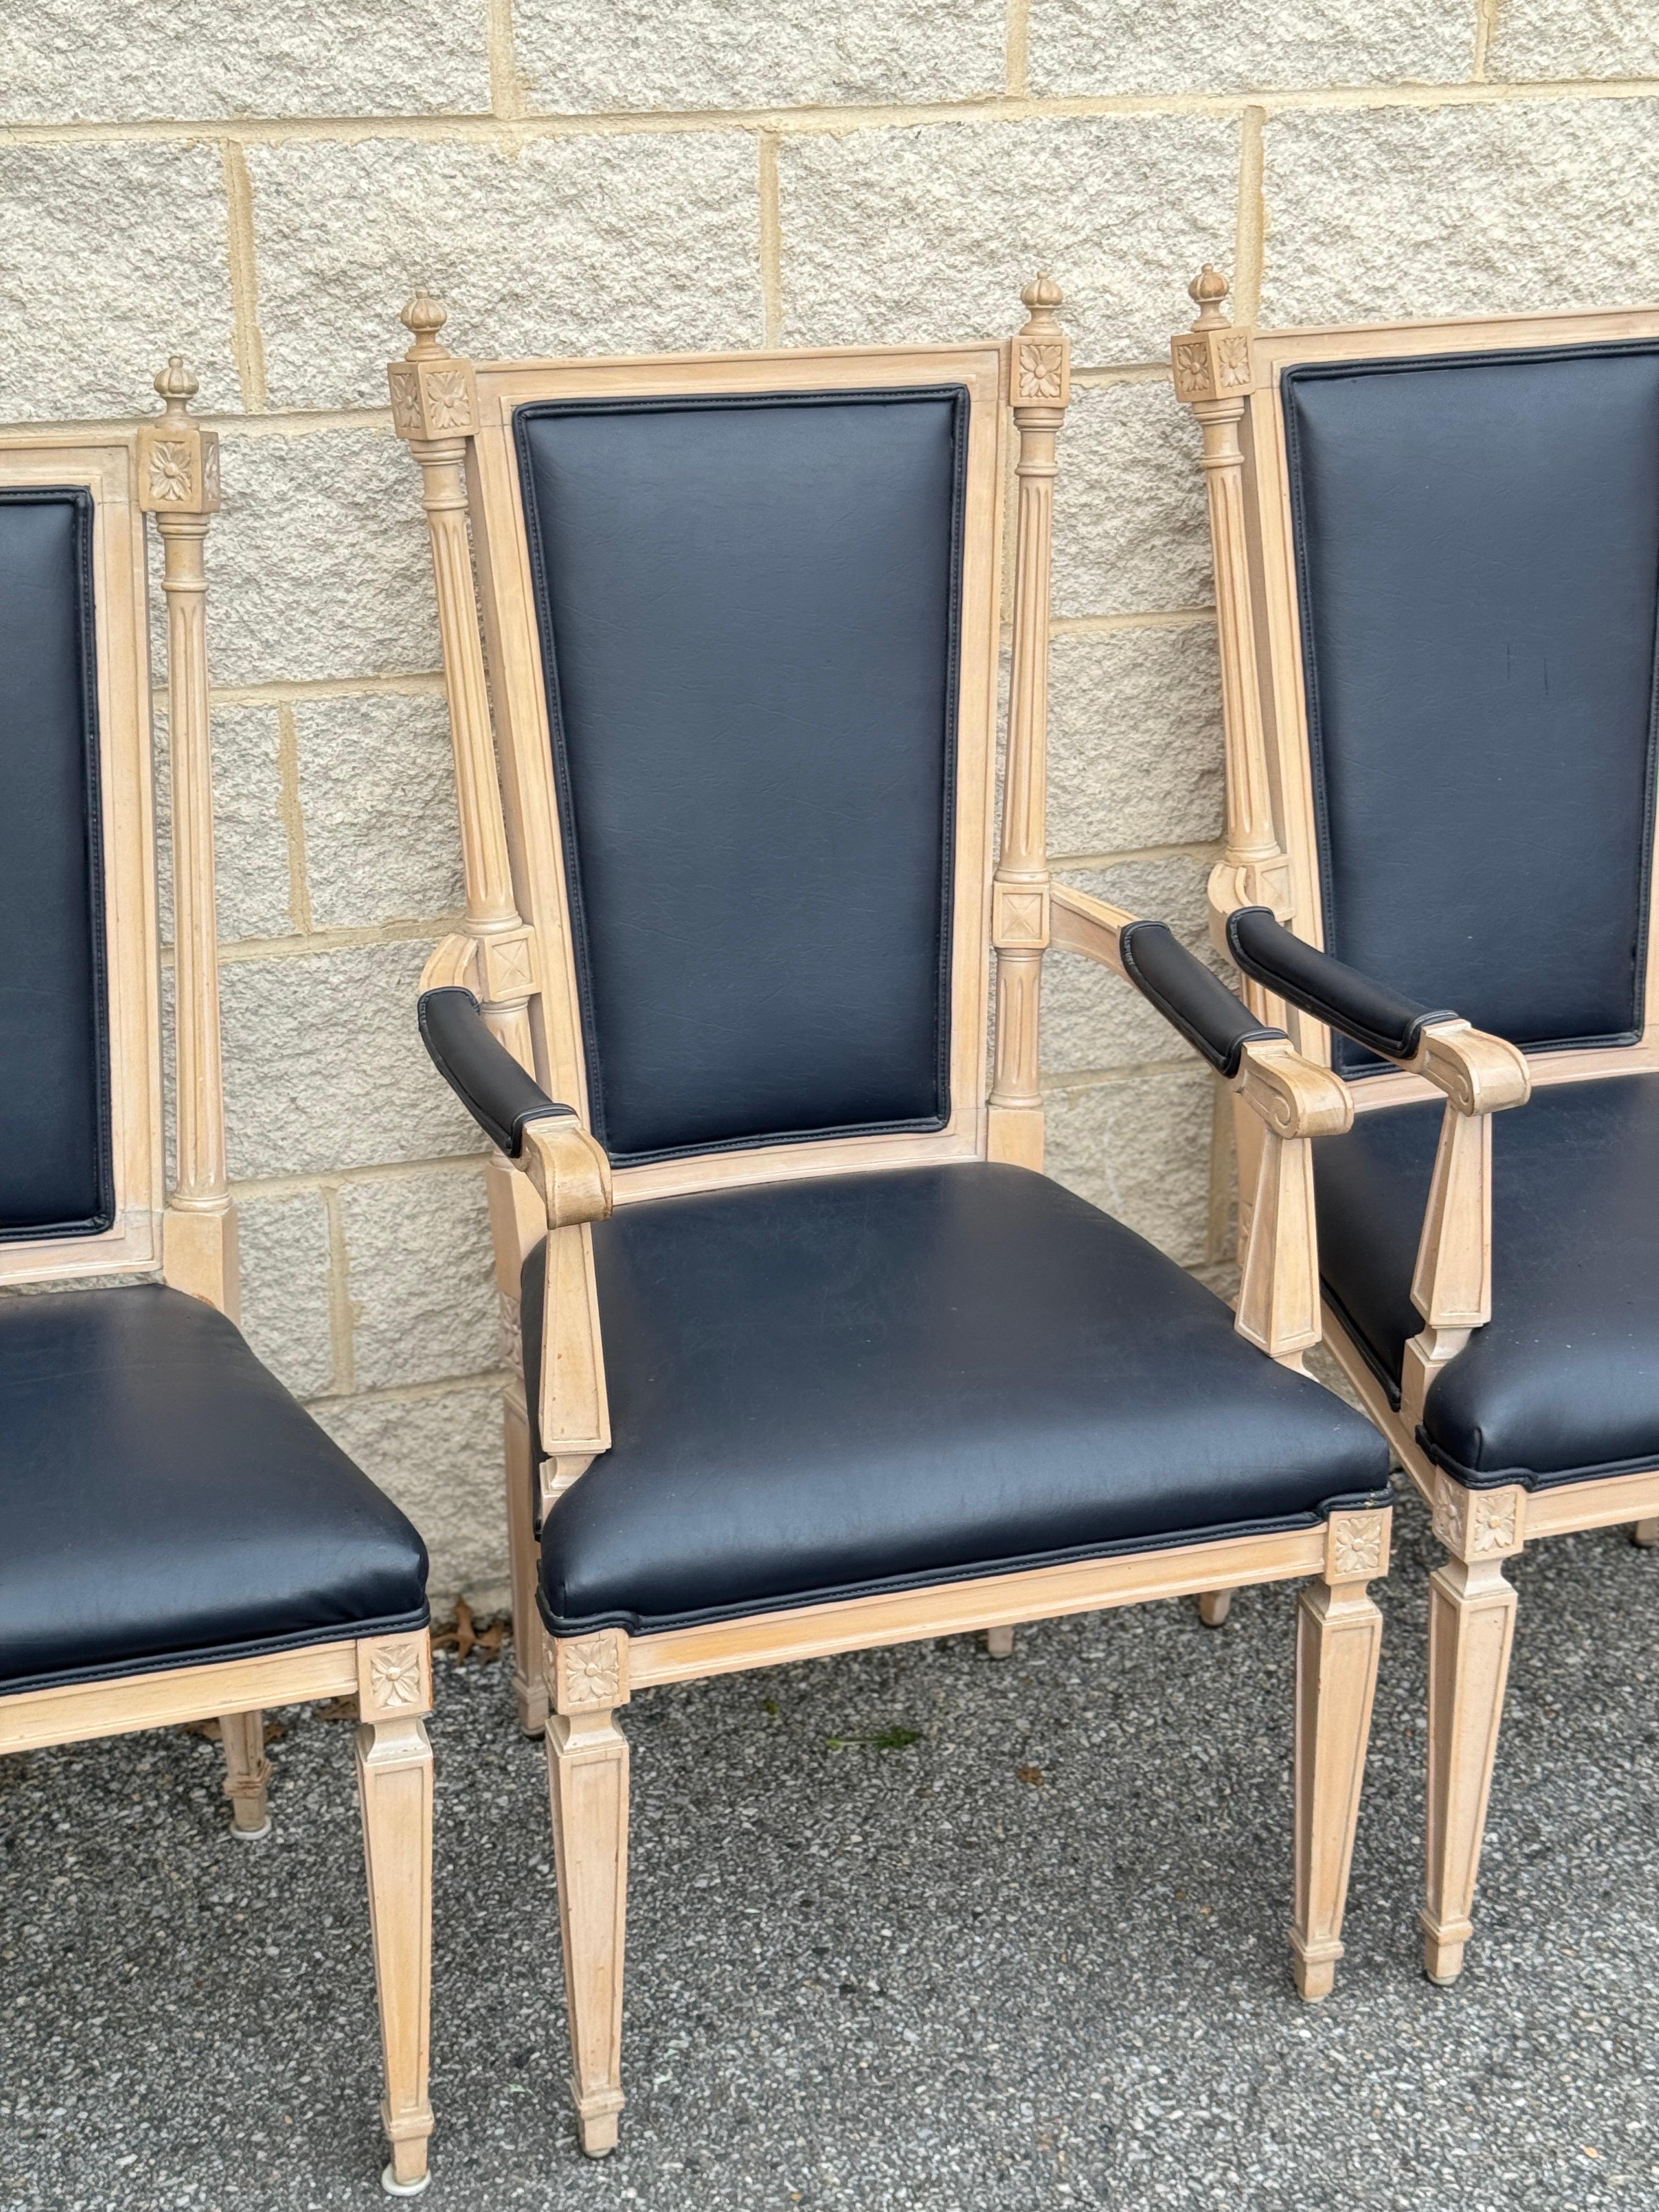 6 Stühle im Louis XIV-Stil mit kunstvoll geschnitzten Holzrahmen und luxuriöser Lederpolsterung. Enthält 2 Sessel mit den Maßen 45